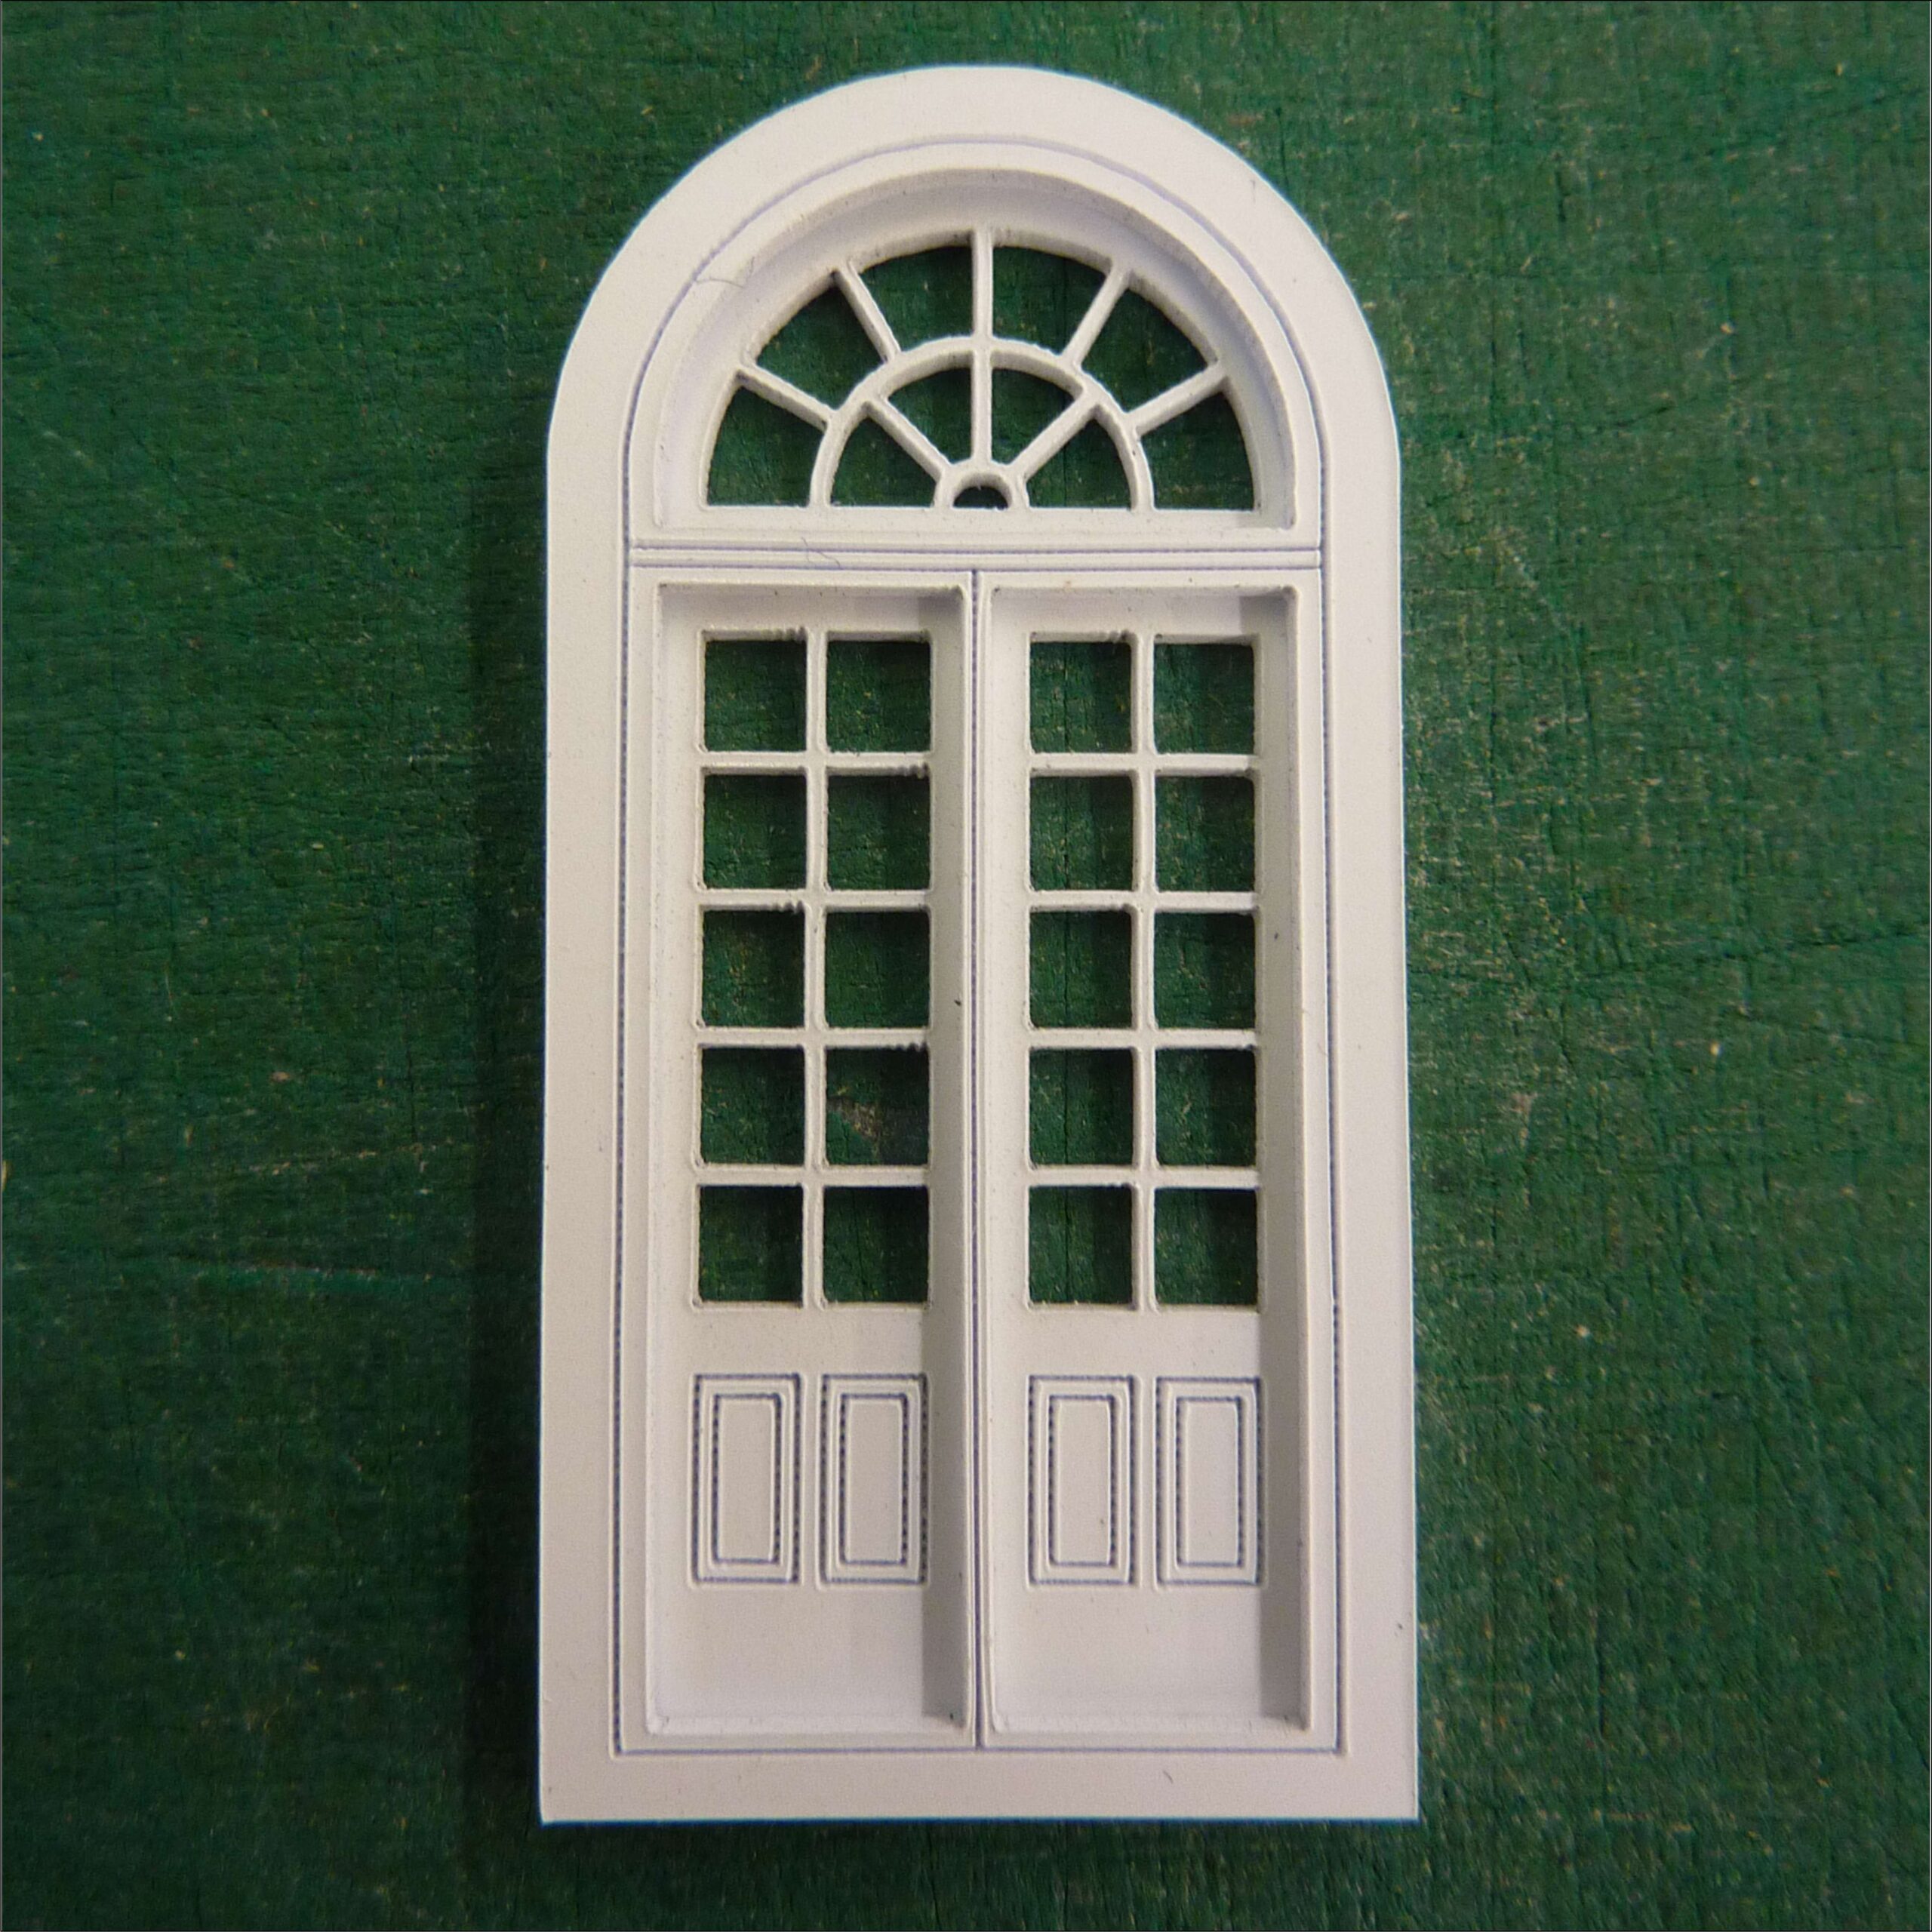 New 00 scale model door